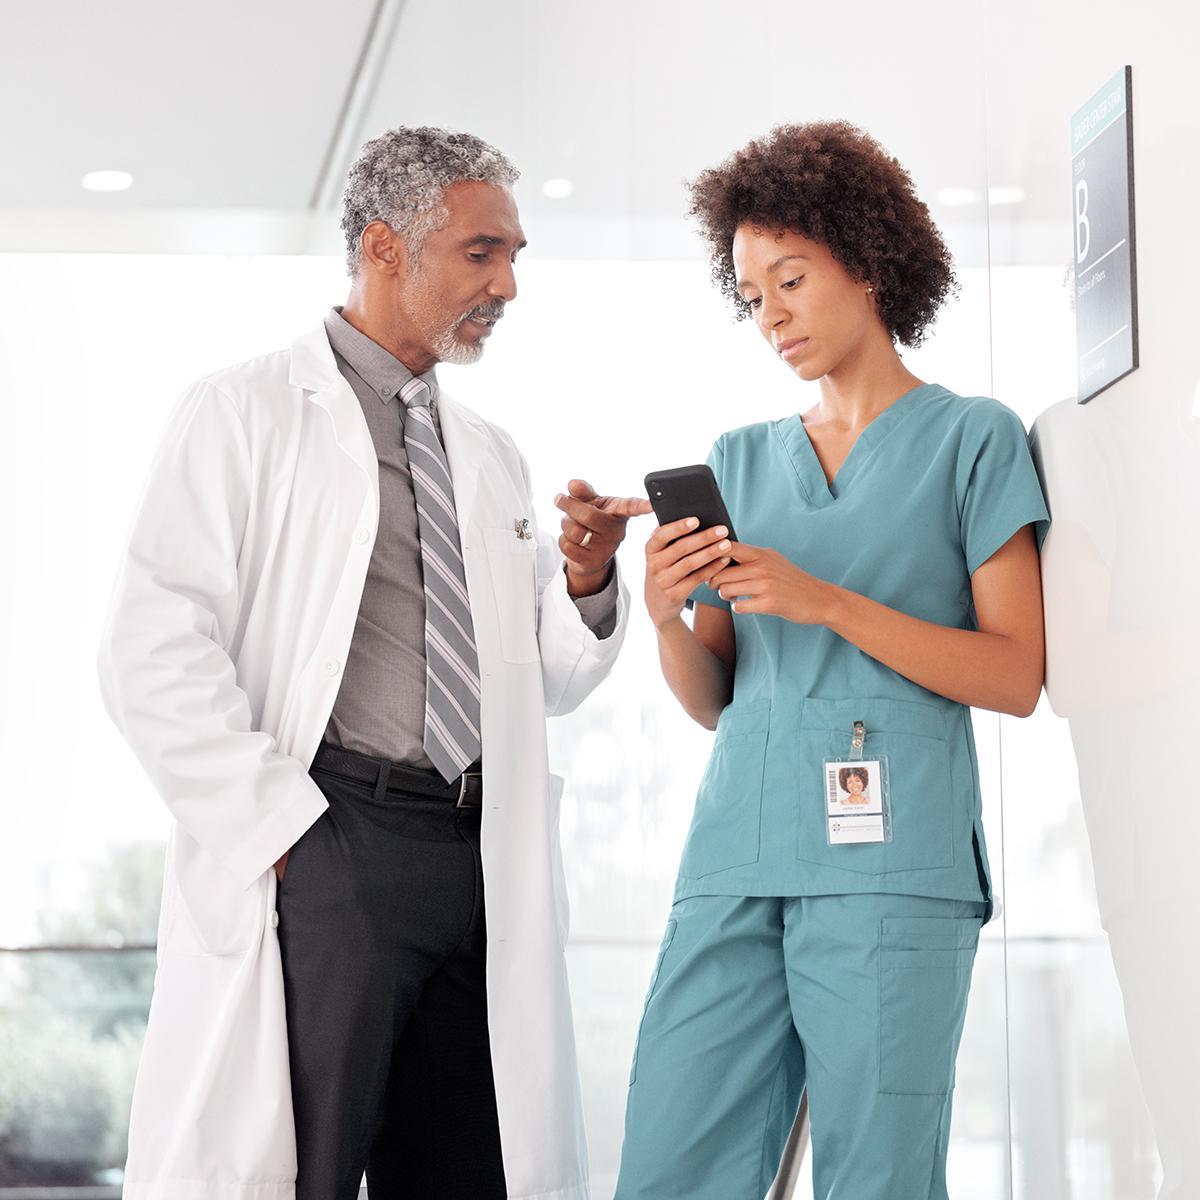 แพทย์และพยาบาลสามารถดูสถานะผู้ป่วยผ่านทางสมาร์ทโฟน